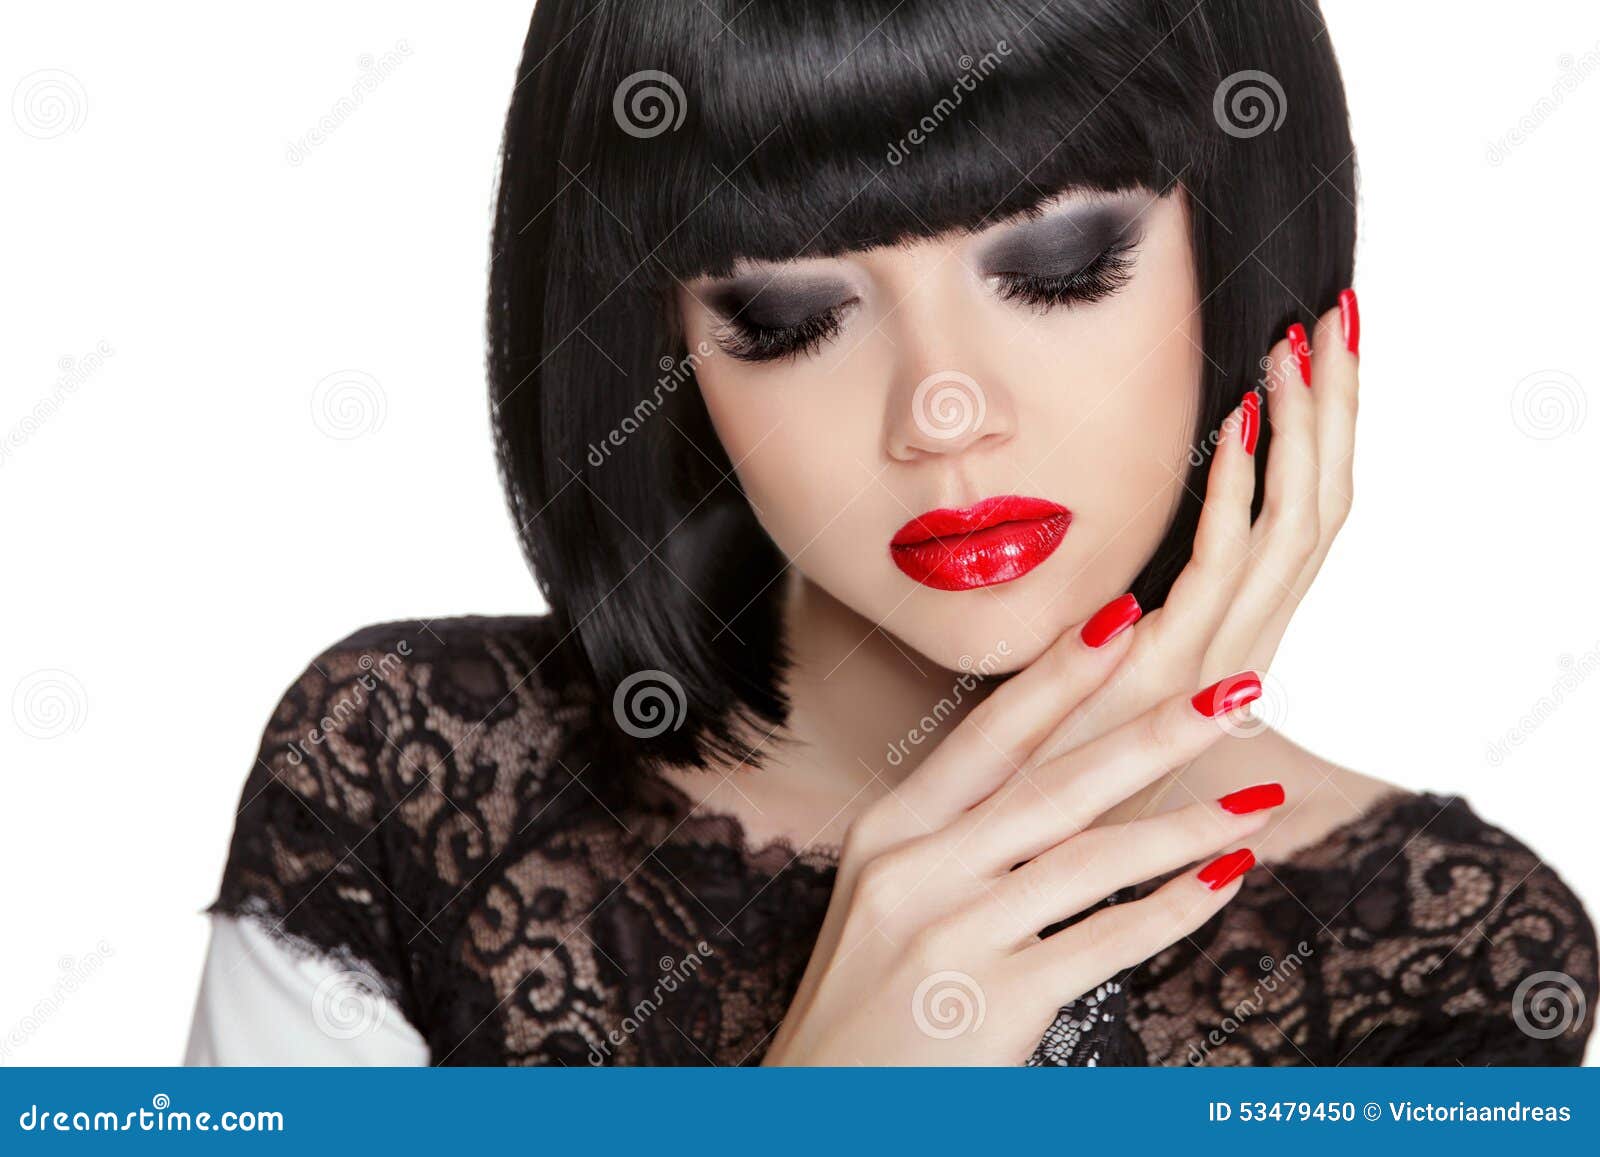 makeup. manicured nails. black bob short hair styling. brunette